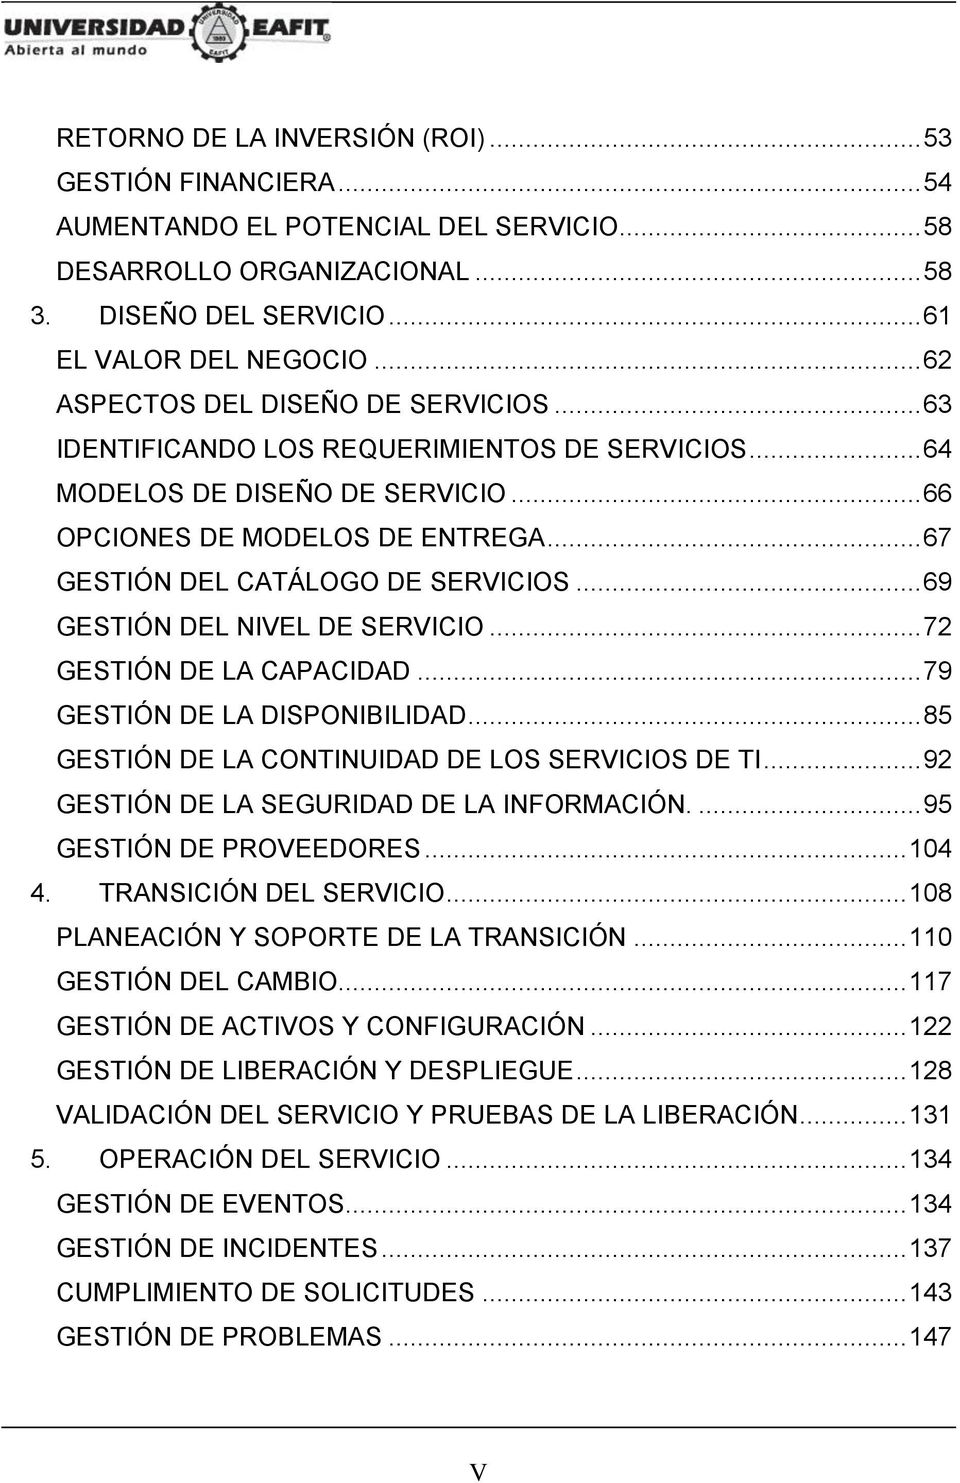 .. 67 GESTIÓN DEL CATÁLOGO DE SERVICIOS... 69 GESTIÓN DEL NIVEL DE SERVICIO... 72 GESTIÓN DE LA CAPACIDAD... 79 GESTIÓN DE LA DISPONIBILIDAD... 85 GESTIÓN DE LA CONTINUIDAD DE LOS SERVICIOS DE TI.